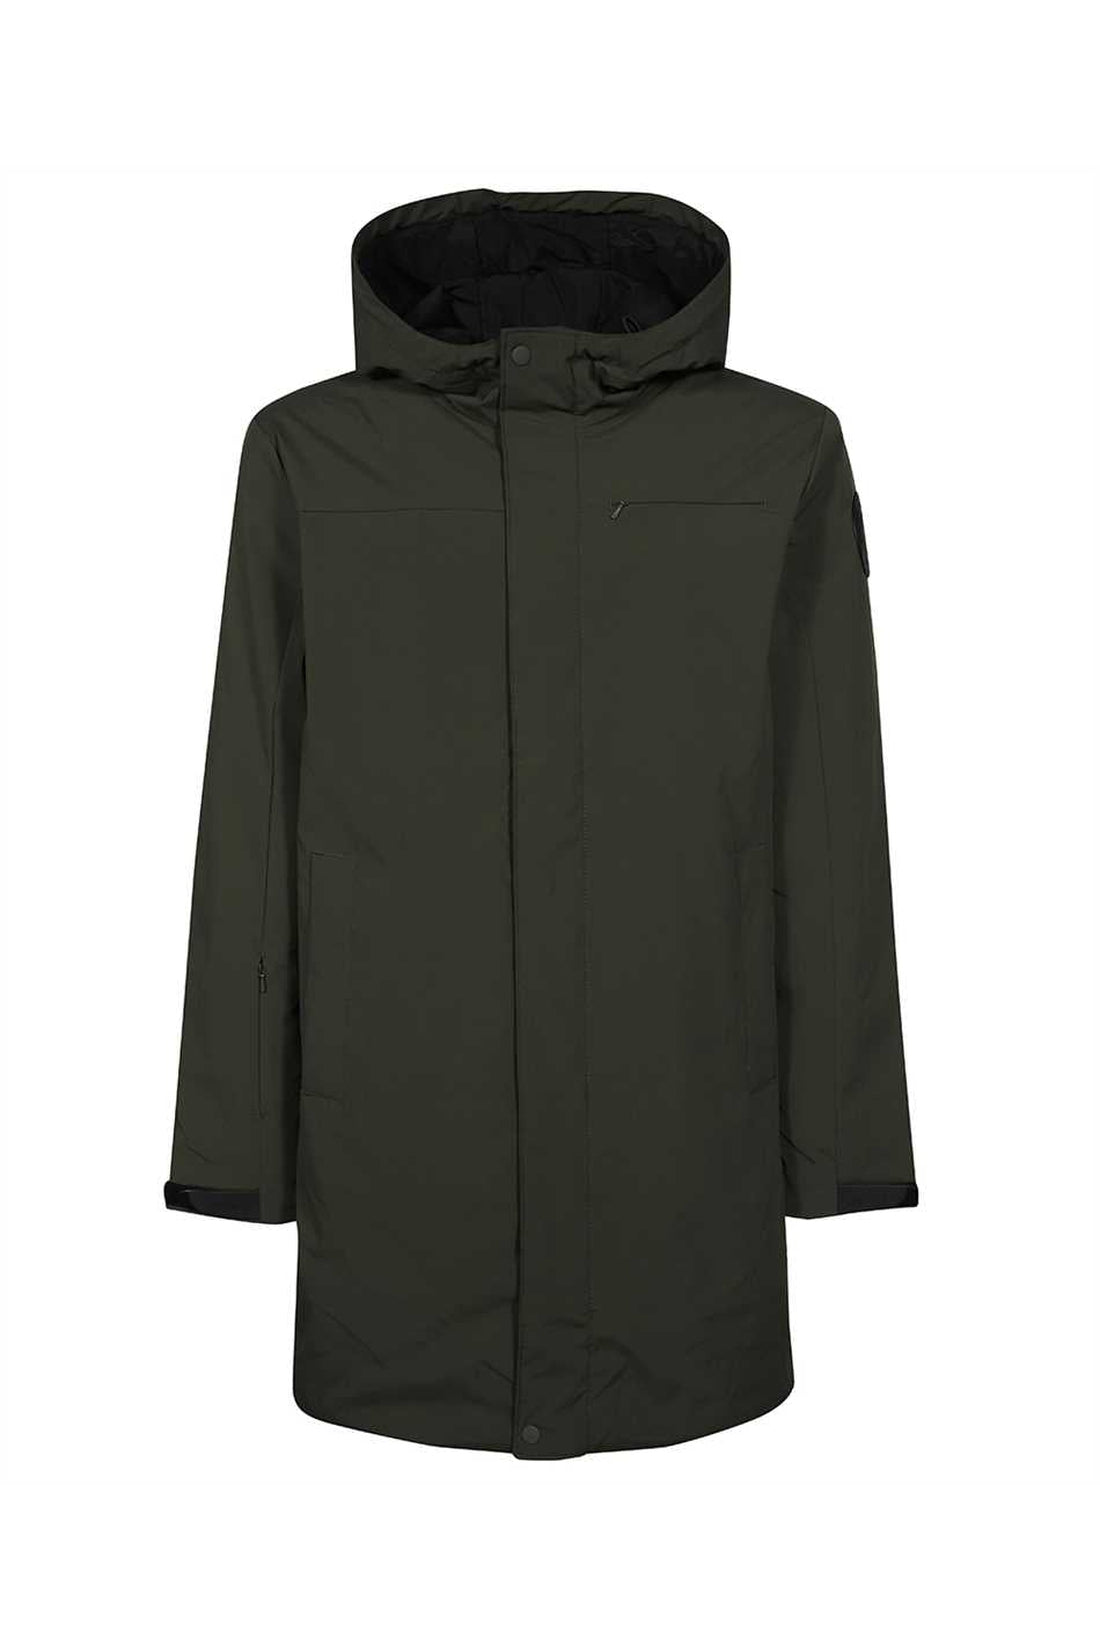 Les Deux-OUTLET-SALE-Techno fabric raincoat-ARCHIVIST